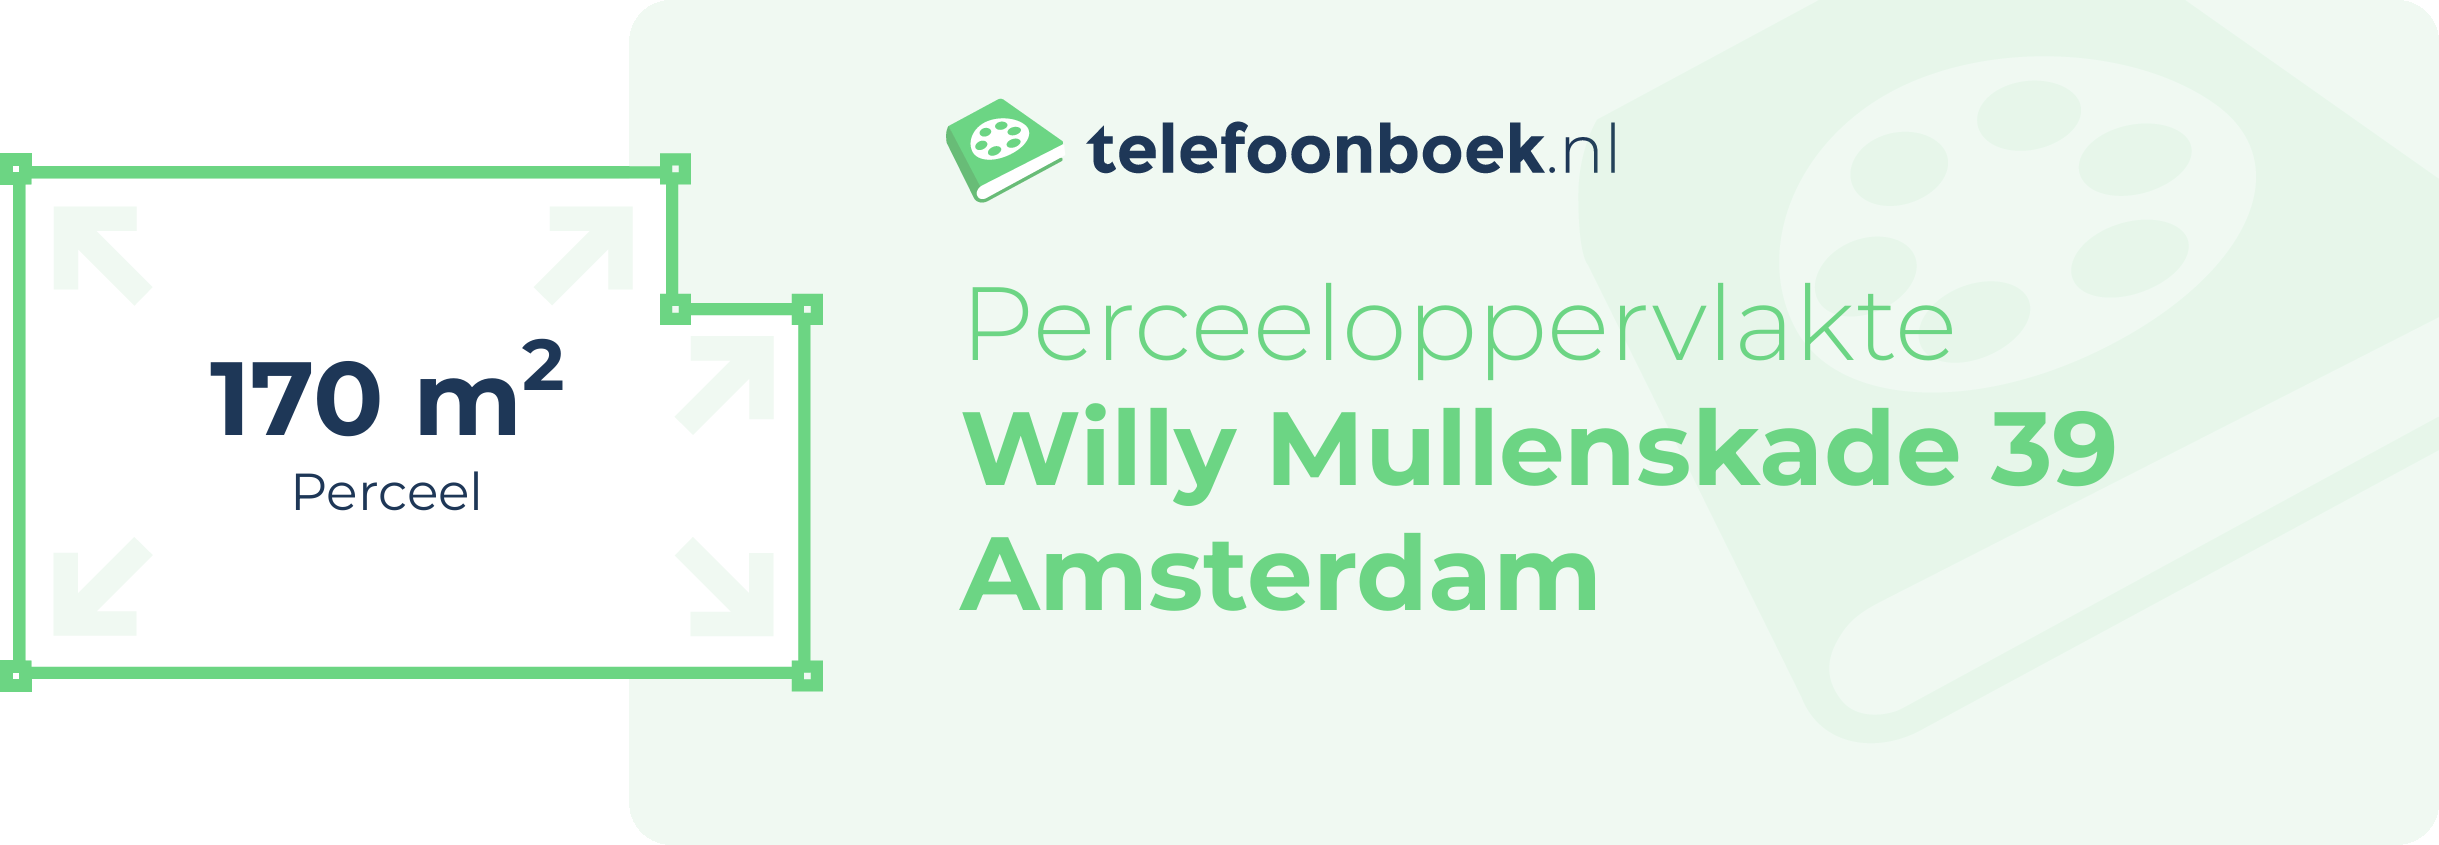 Perceeloppervlakte Willy Mullenskade 39 Amsterdam